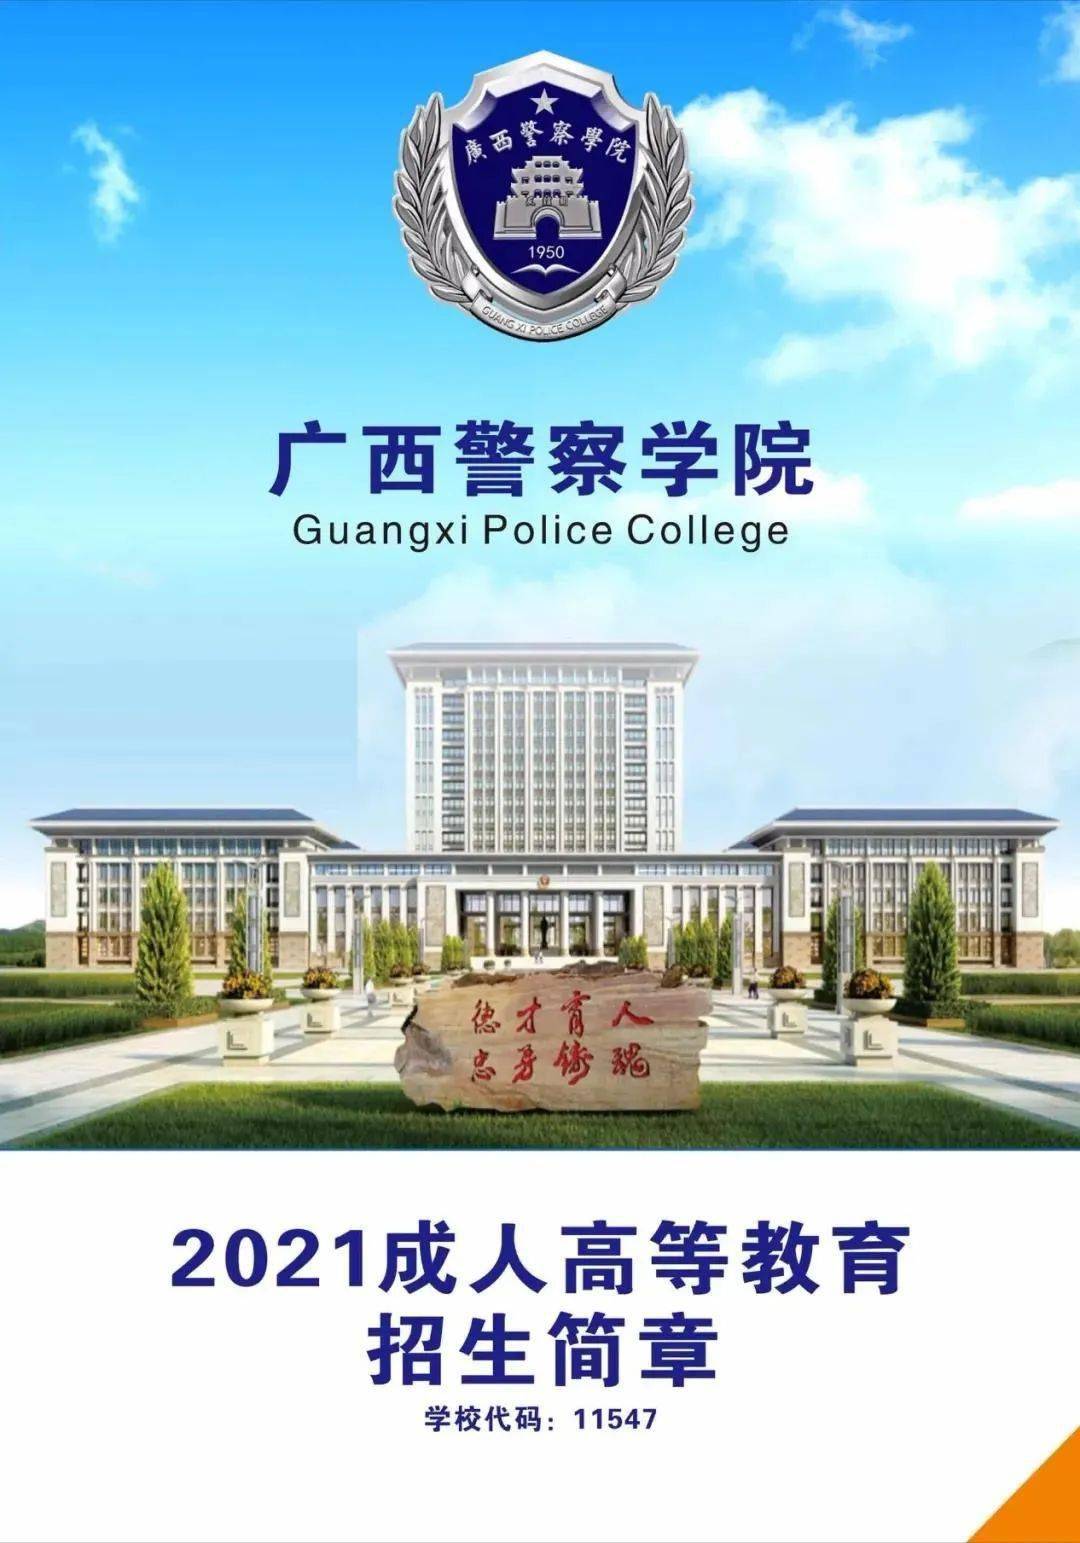 好消息好消息!广西警察学院成人函授教育招生啦